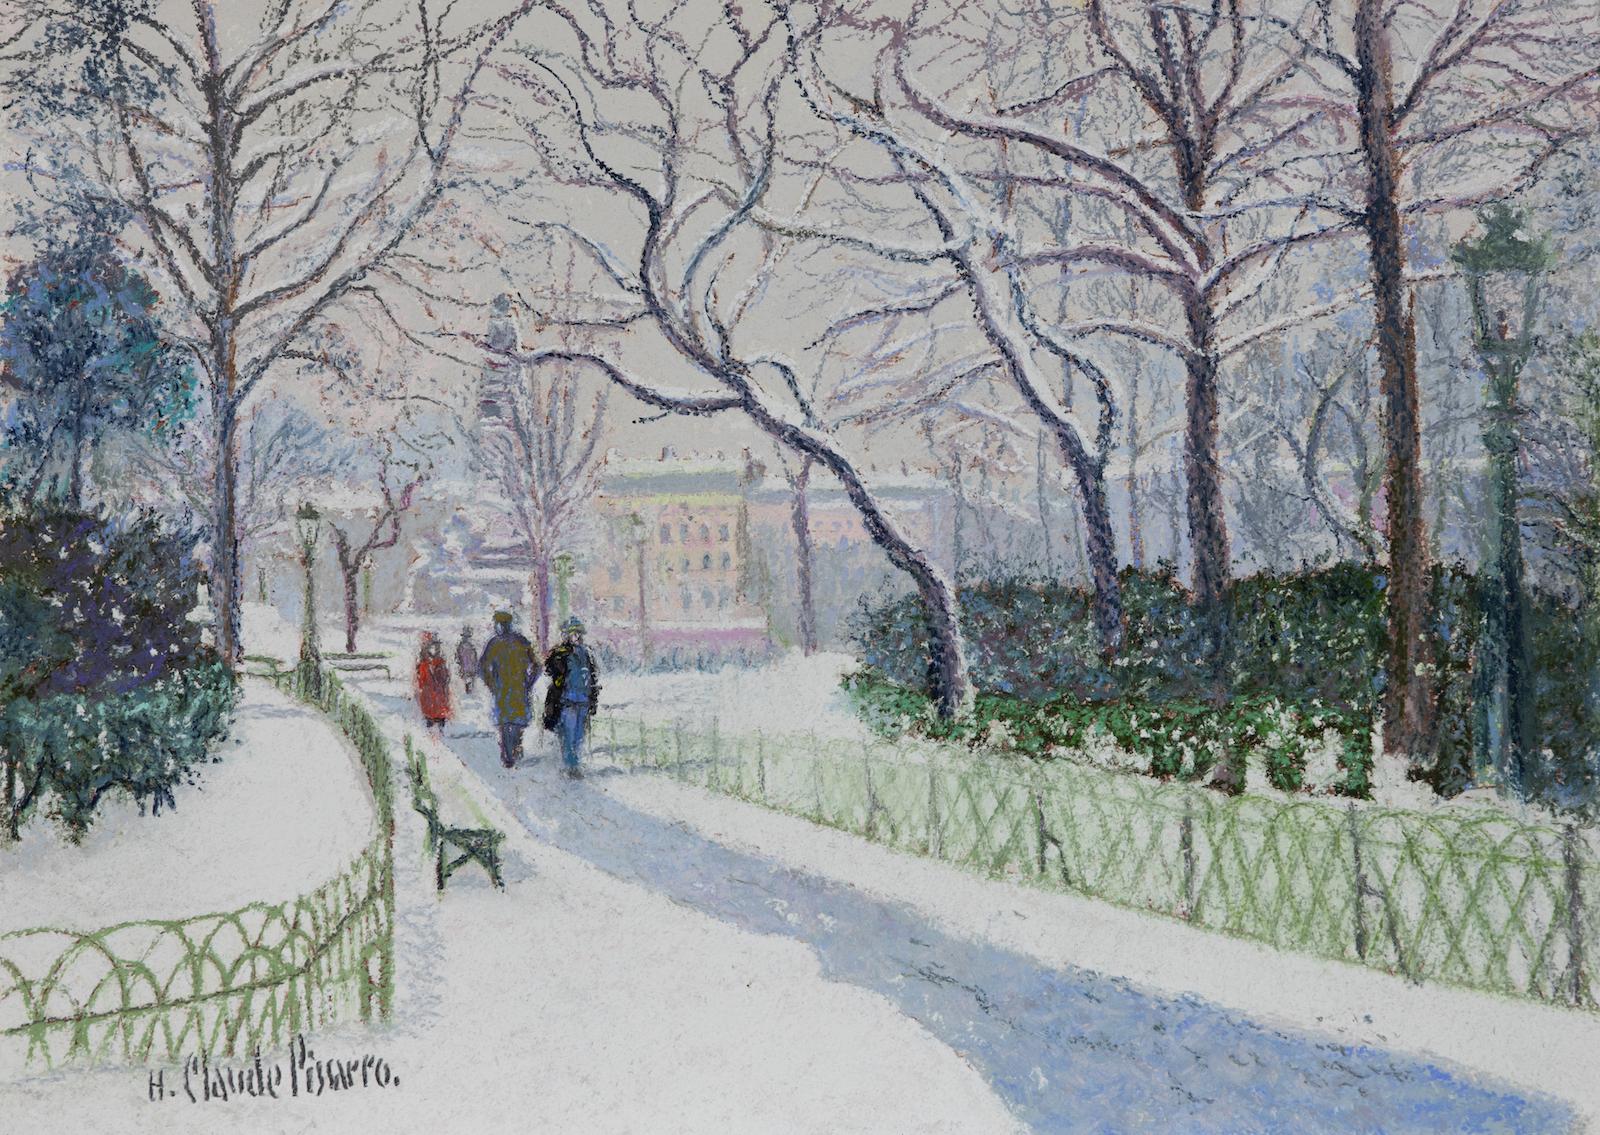 La Place Carnot Sous la Neige (Lyon) par H. Claude Pissarro - Peinture de scène de neige